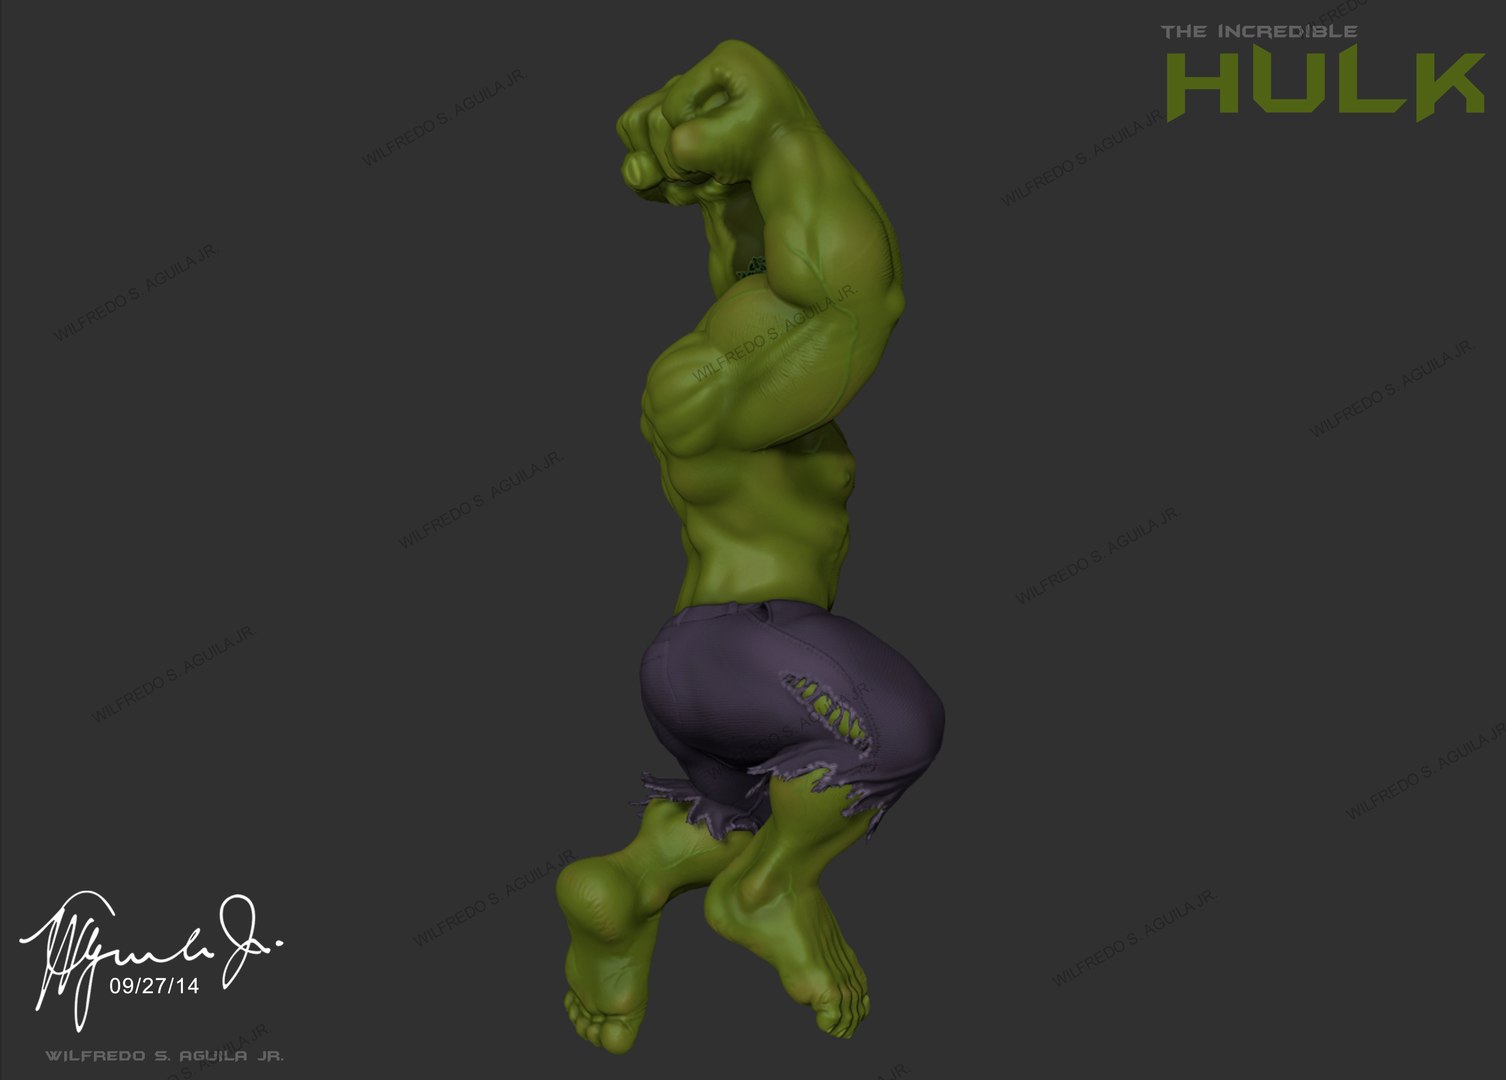 Tikka Beauty Poses Hot With Hulk